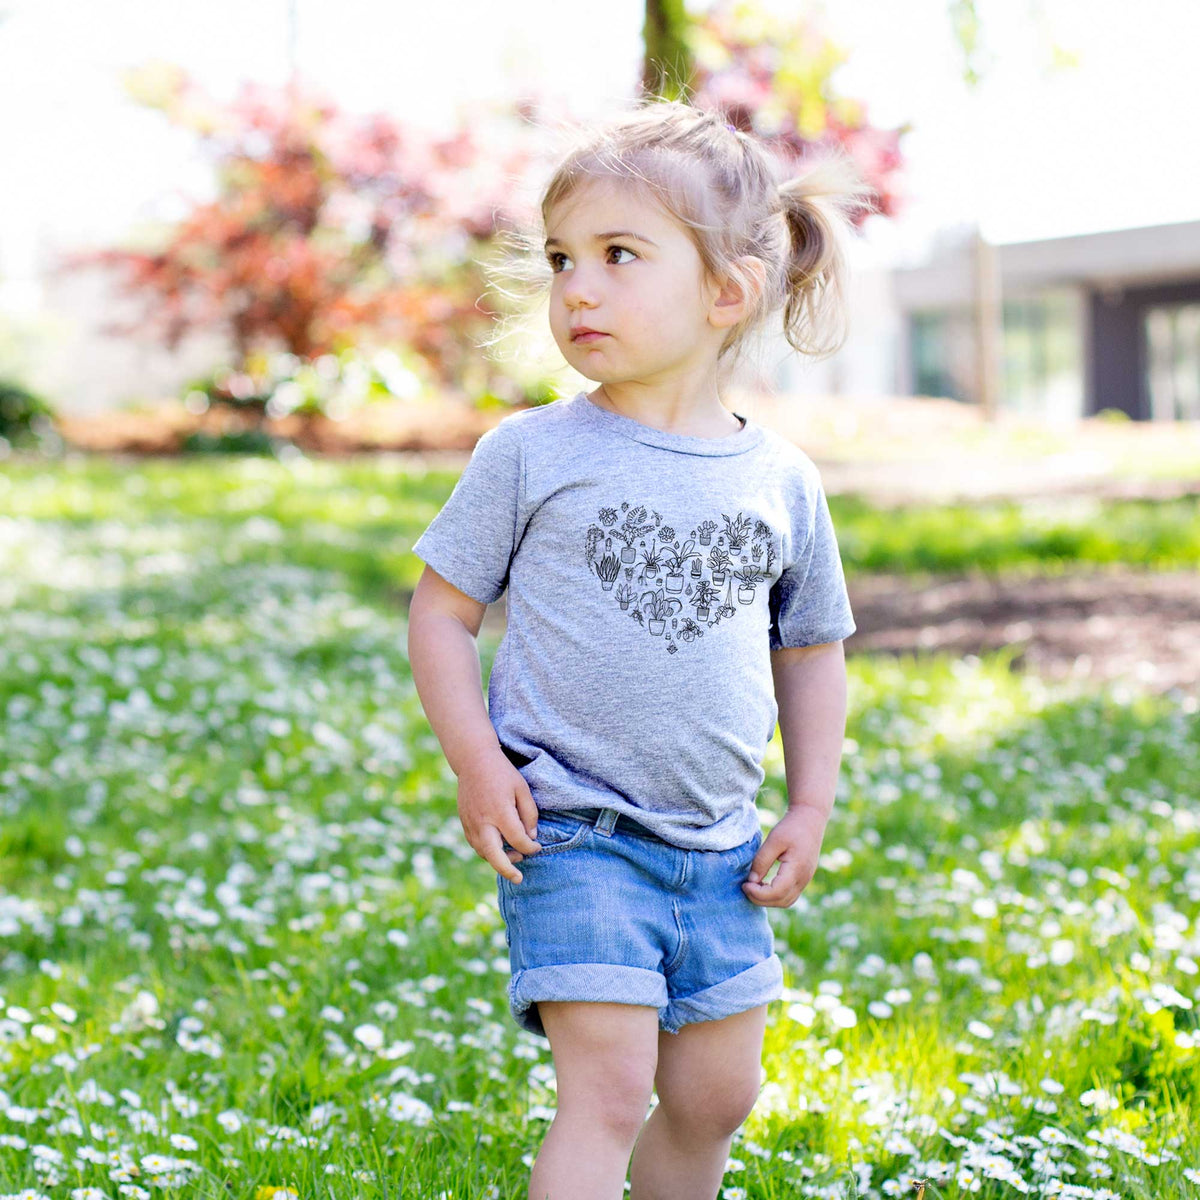 Heart Full of House Plants - Kids Shirt